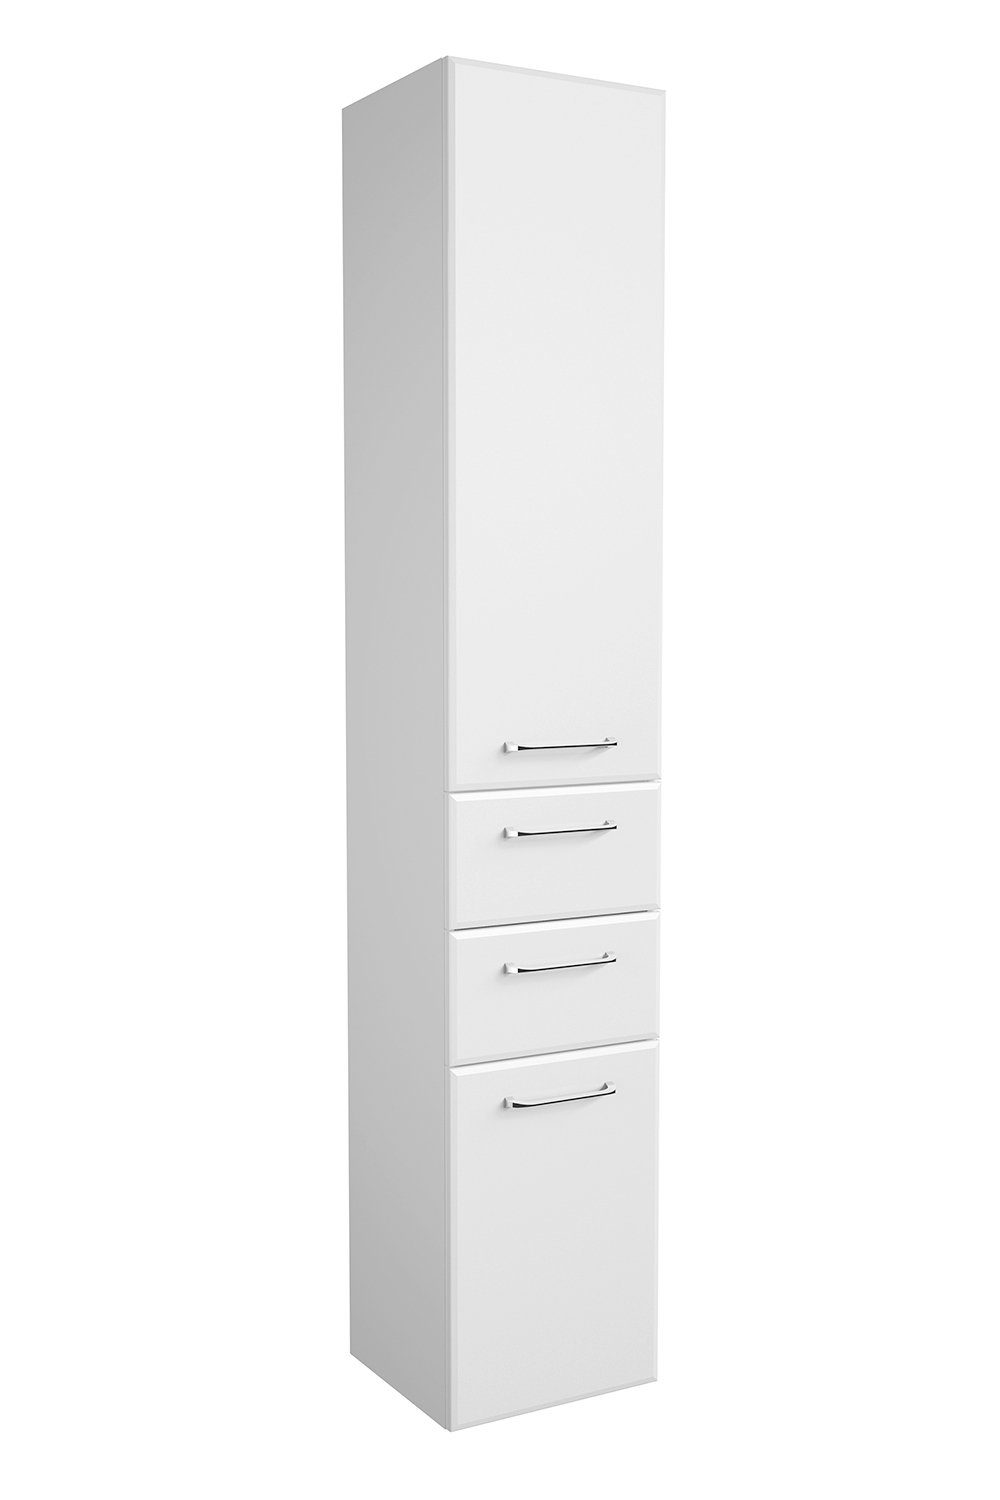 PELIPAL Hochschrank FILO, B 35 cm x H 186 cm, Weiß Hochglanz, 2 Türen, 2 Schubladen